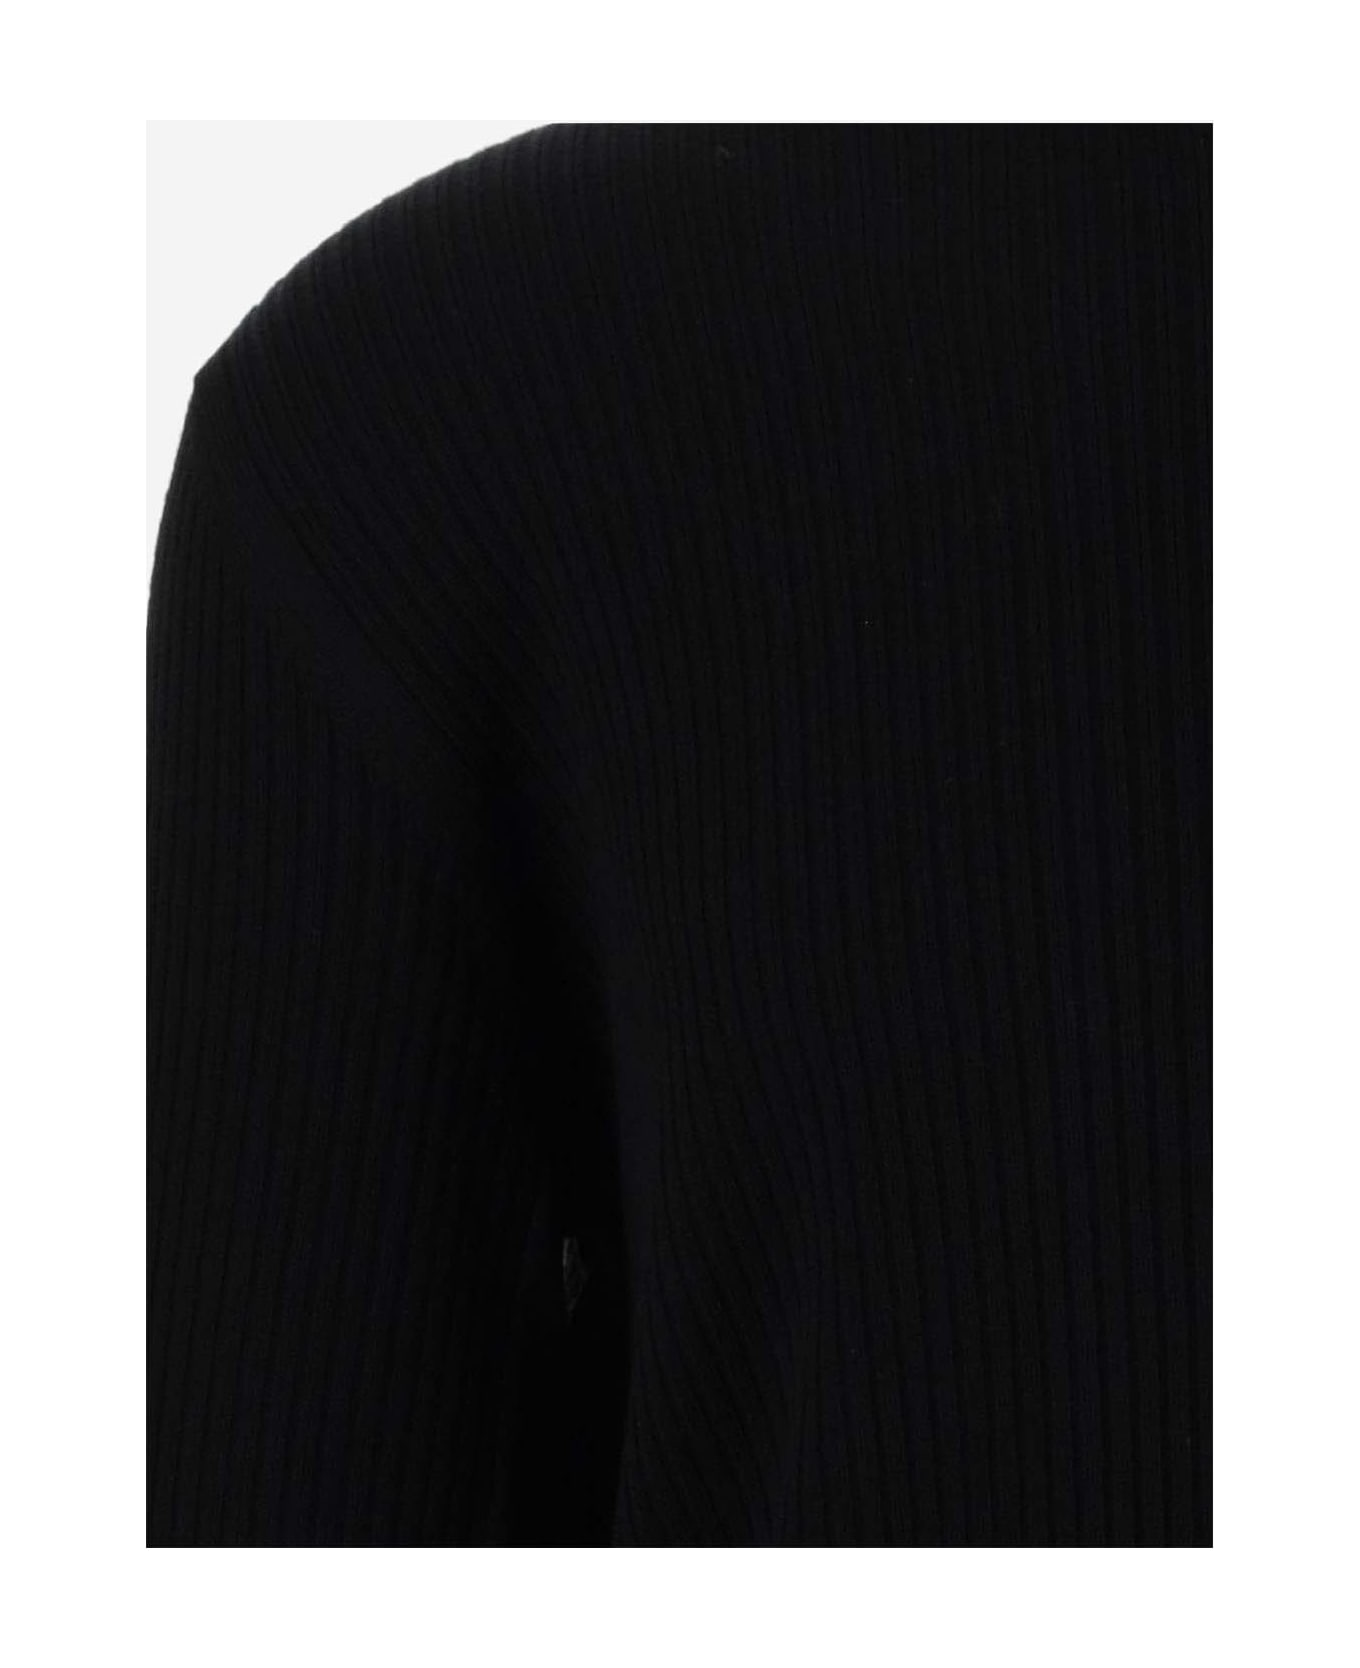 Giorgio Armani Ribbed Wool Sweater - Black